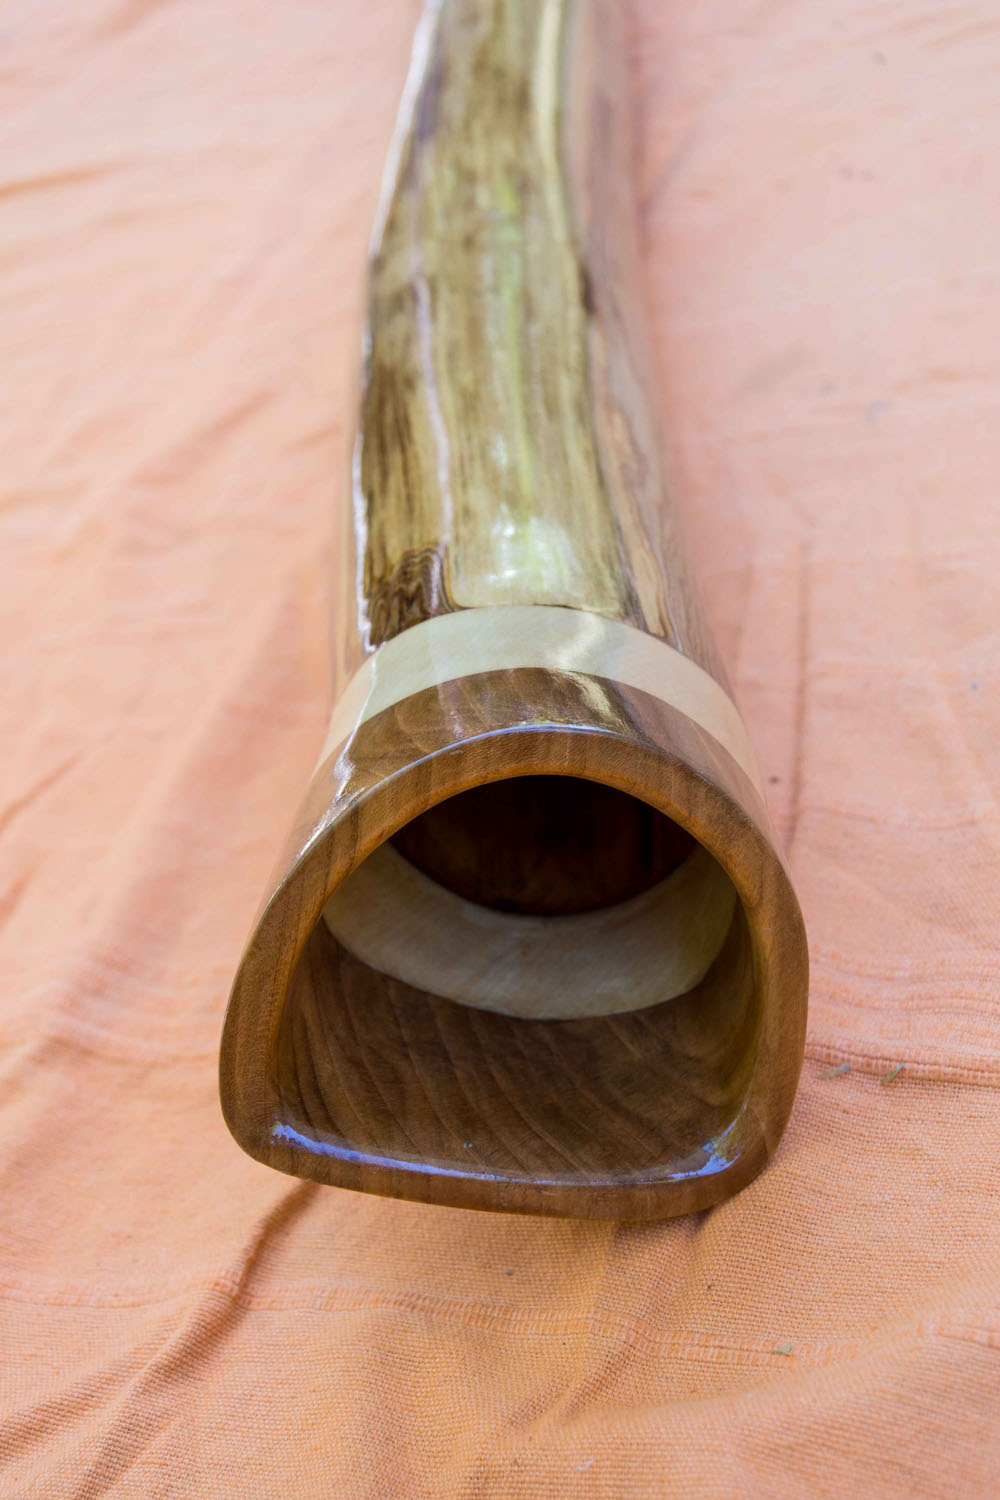 Didgerido nommé Giant, en Sol, légèrement courbé, fabriqué en bois de tilleul, avec de l'érable et du merisier à la cloche